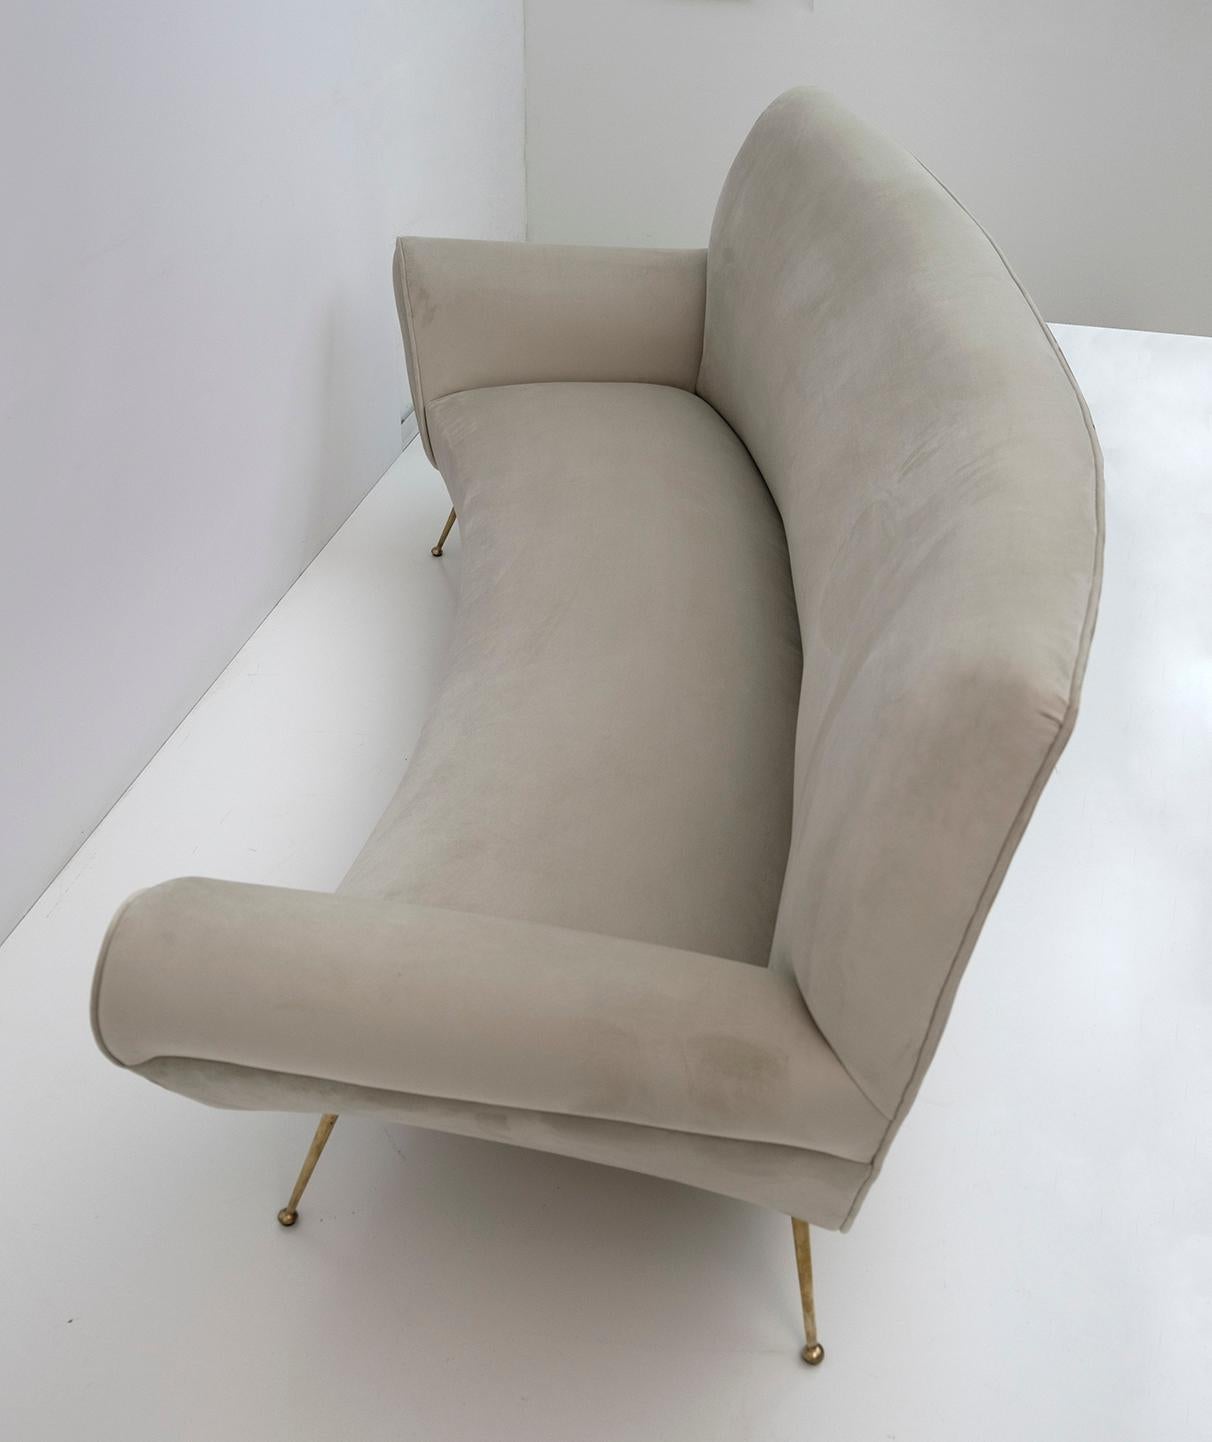 Gigi Radice Mid-Century Modern Italian Velvet Curved Sofa for Minotti, 1950s For Sale 5